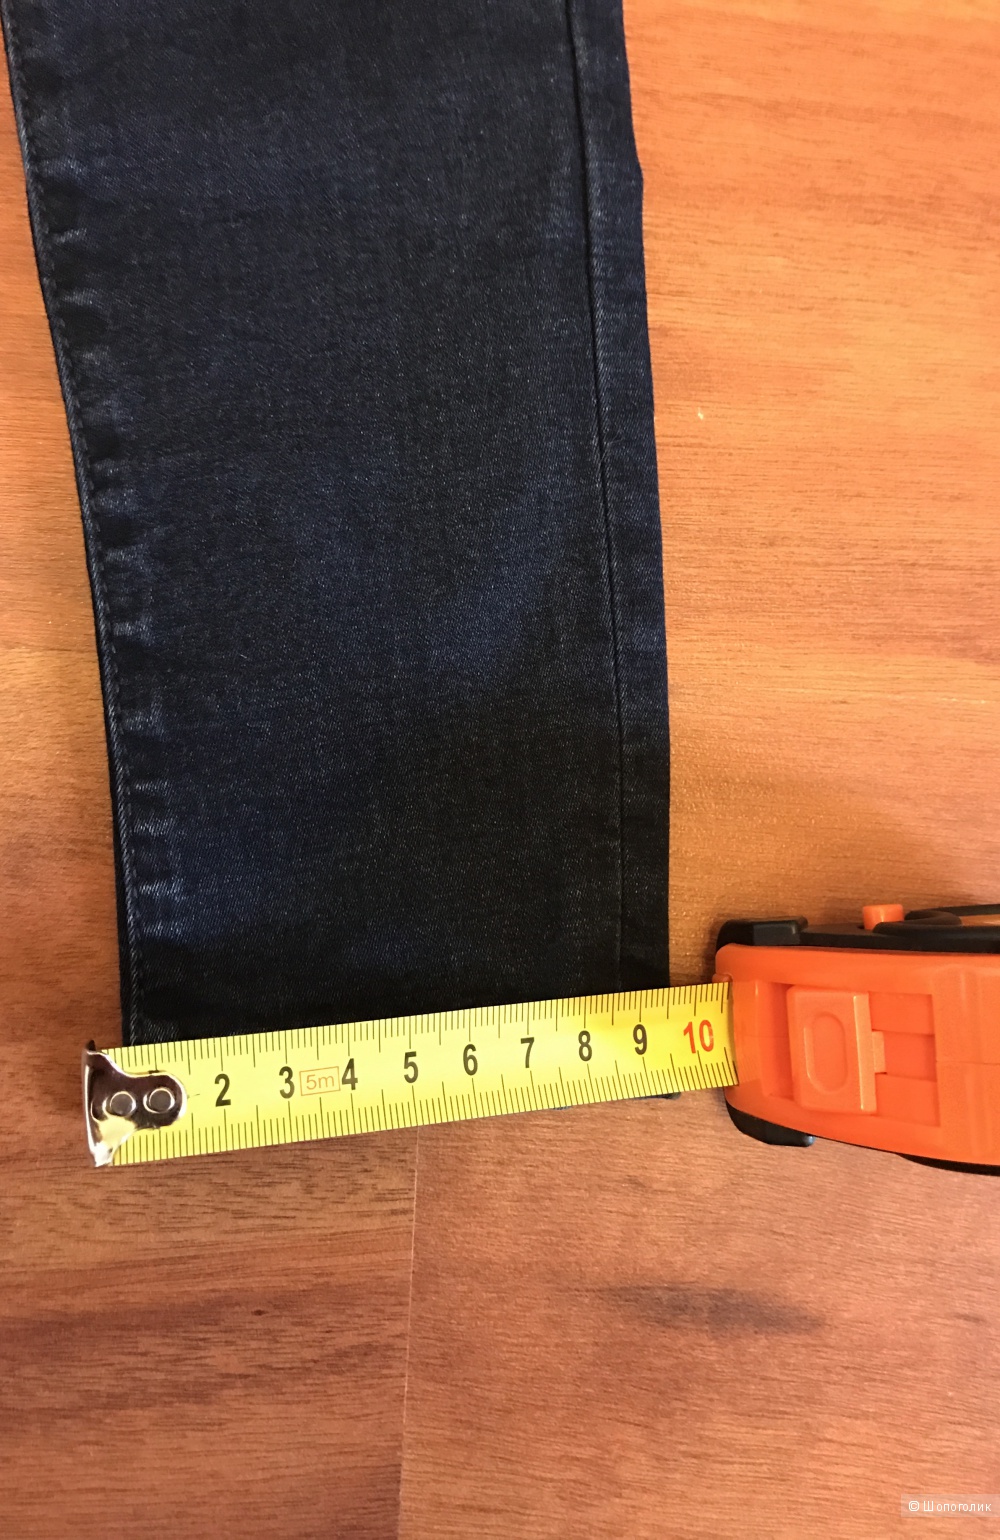 Женские темно-синие узкие джинсы Pepe Jeans модель Lola 26 размер оригинал новые